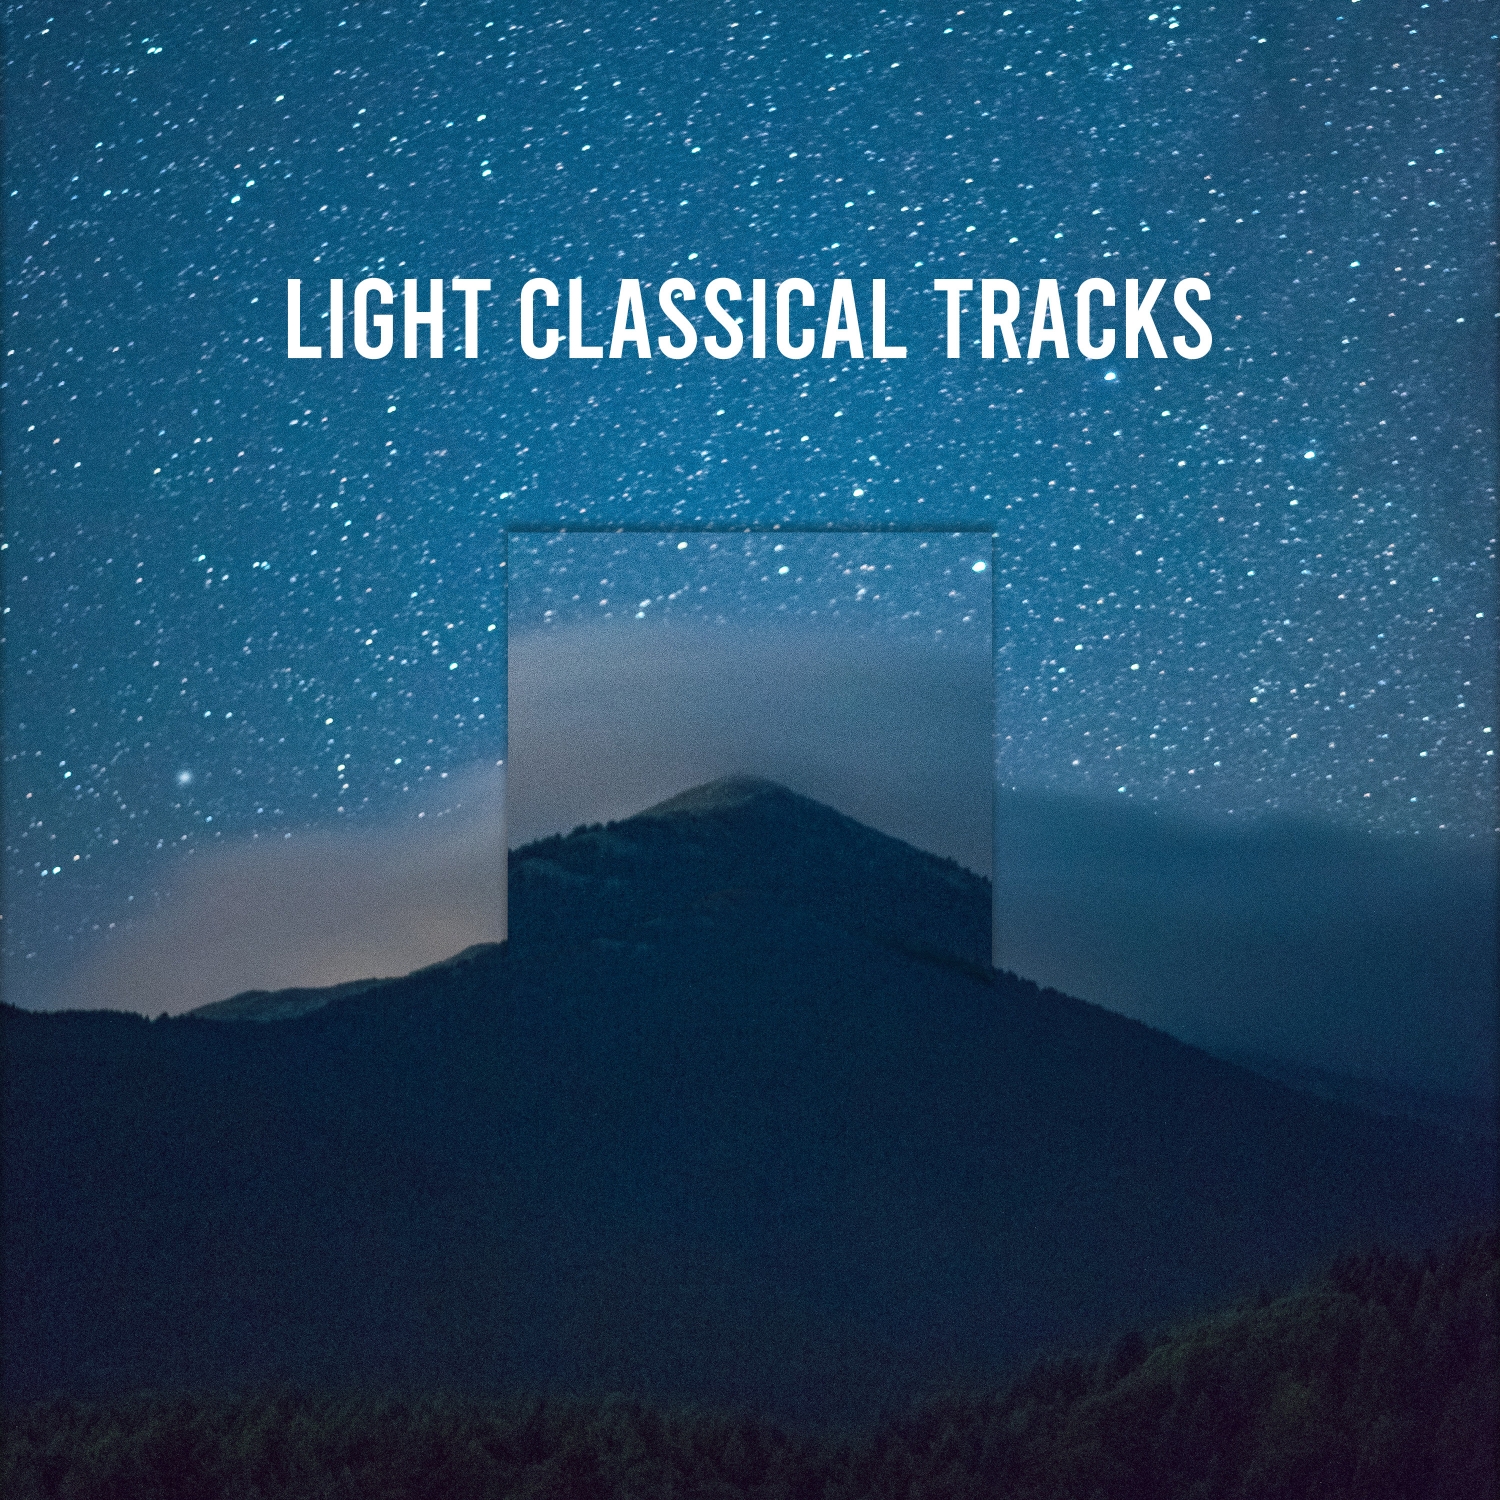 14 Light Classical Tracks